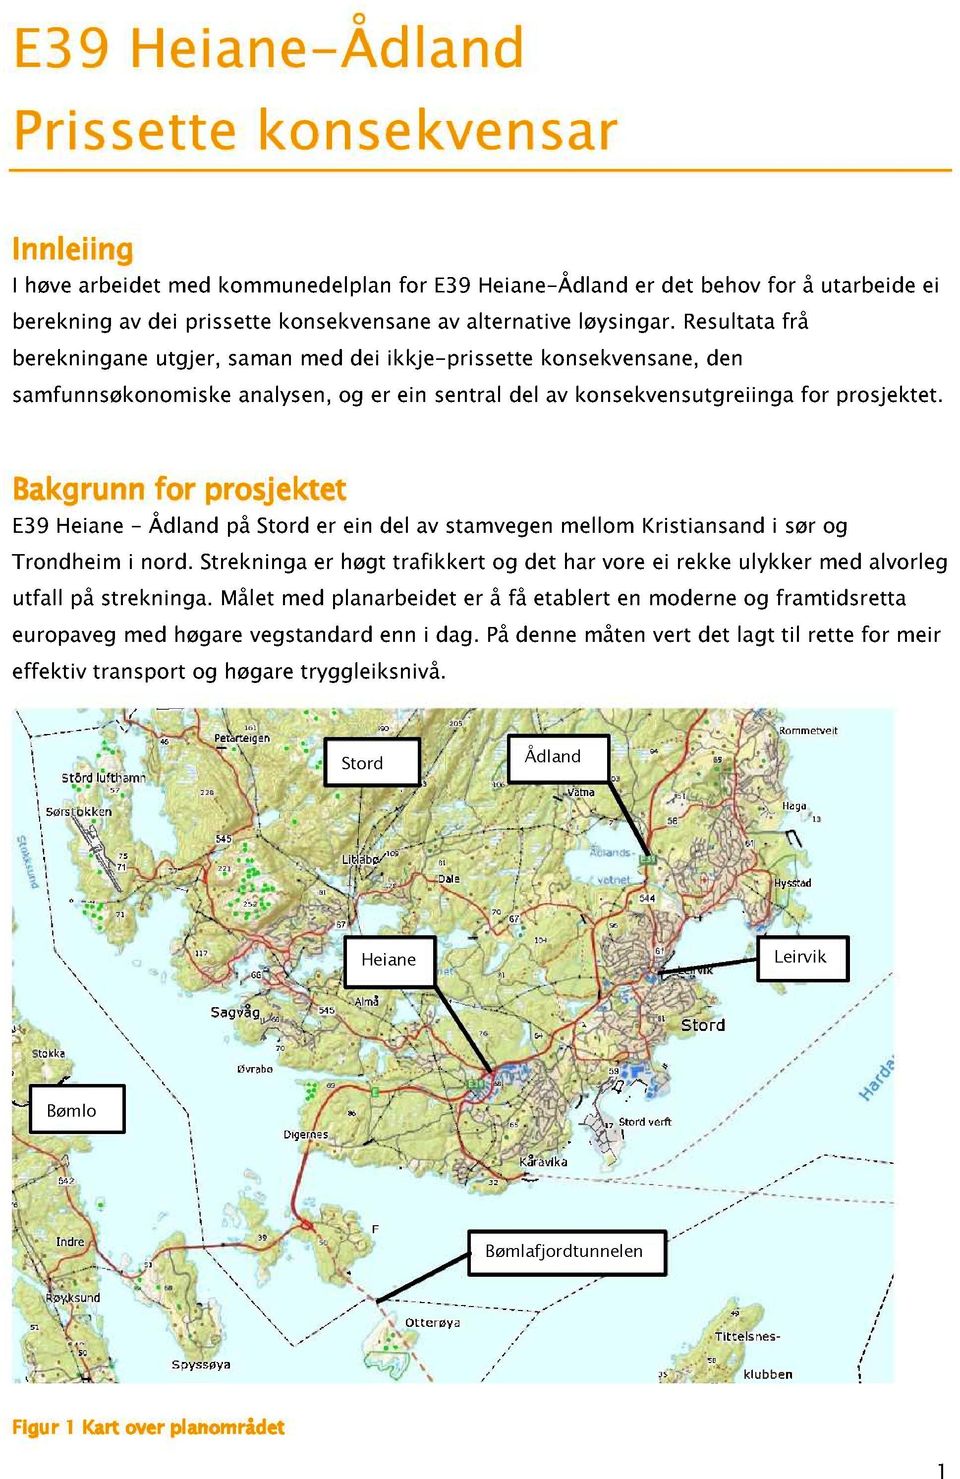 Bakgrunn for prosjektet E Heiane - dland på Stord er ein del av stamvegen mellom Kristiansand i sør og rondheim i nord.